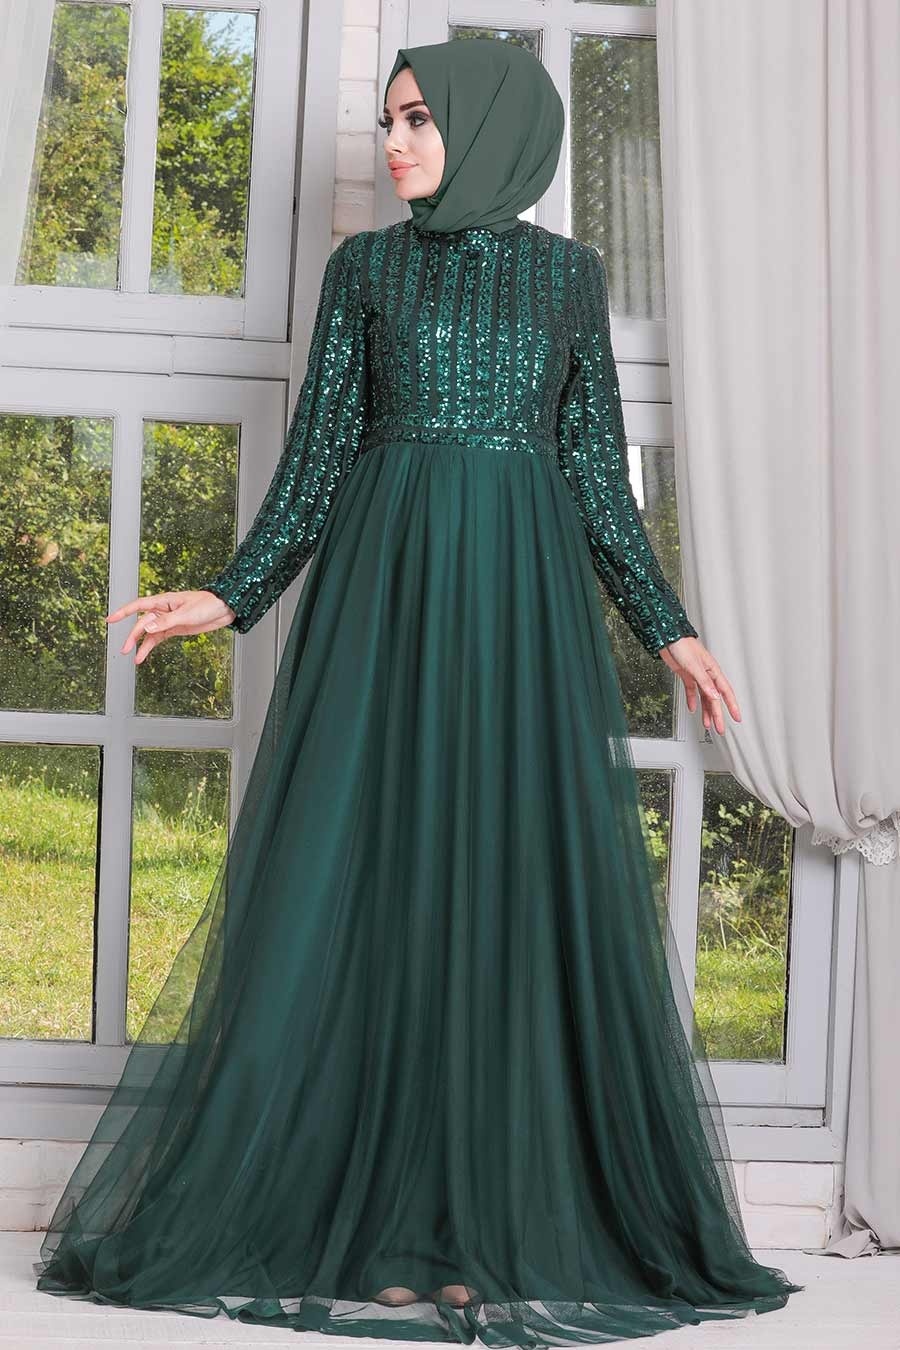 Tesettürlü Abiye Elbise - Pul Payetli Yeşil Tesettür Abiye Elbise 5338Y